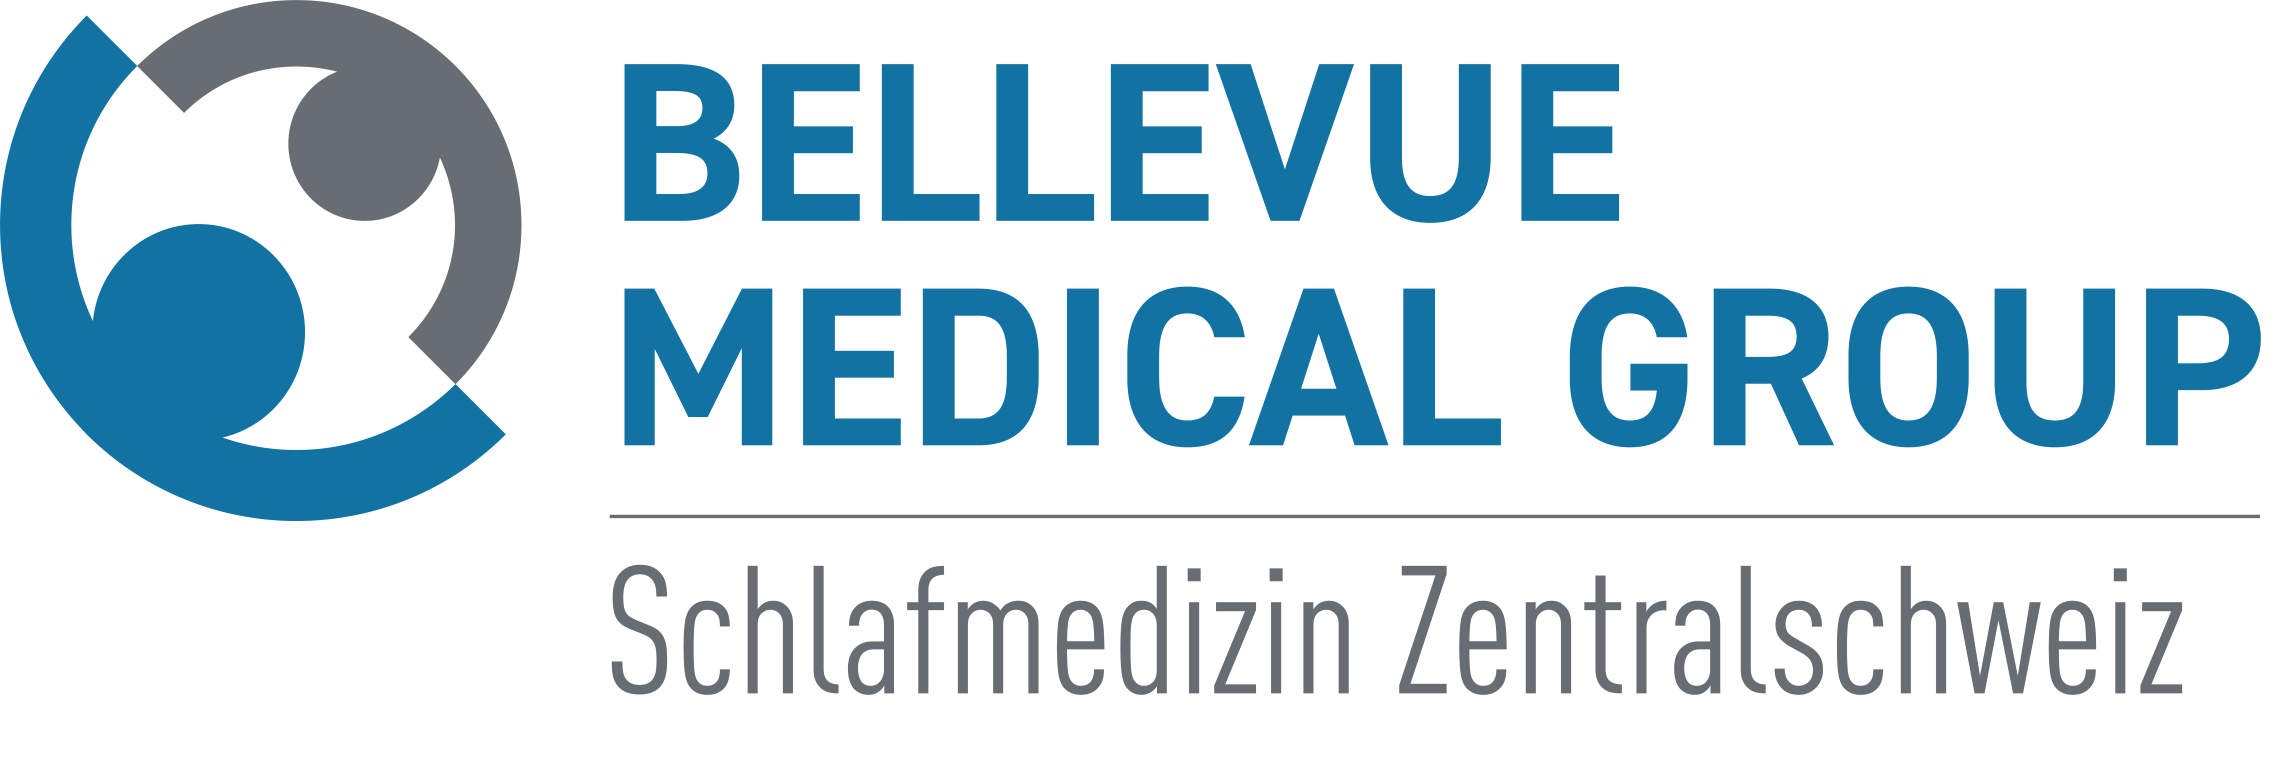 Sleep Medicine Central Switzerland